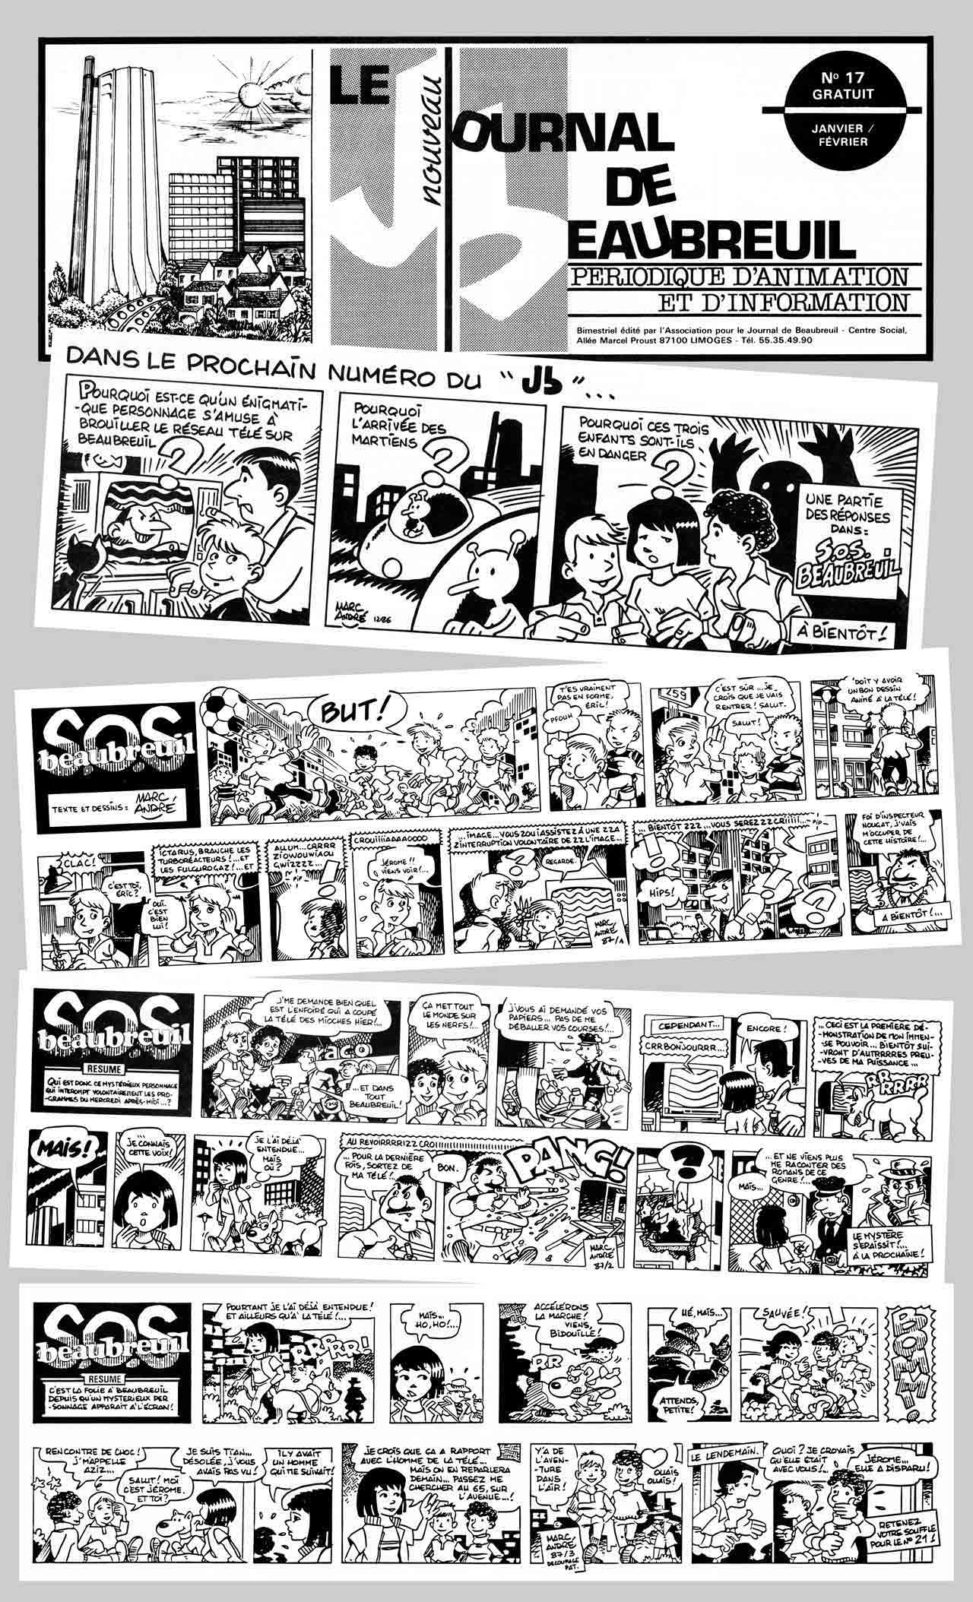 SOS Beaubreuil dans Le Nouveau Journal de Beaubreuil 1986-1987 original Marc-André BD Illustration Graphisme Limoges